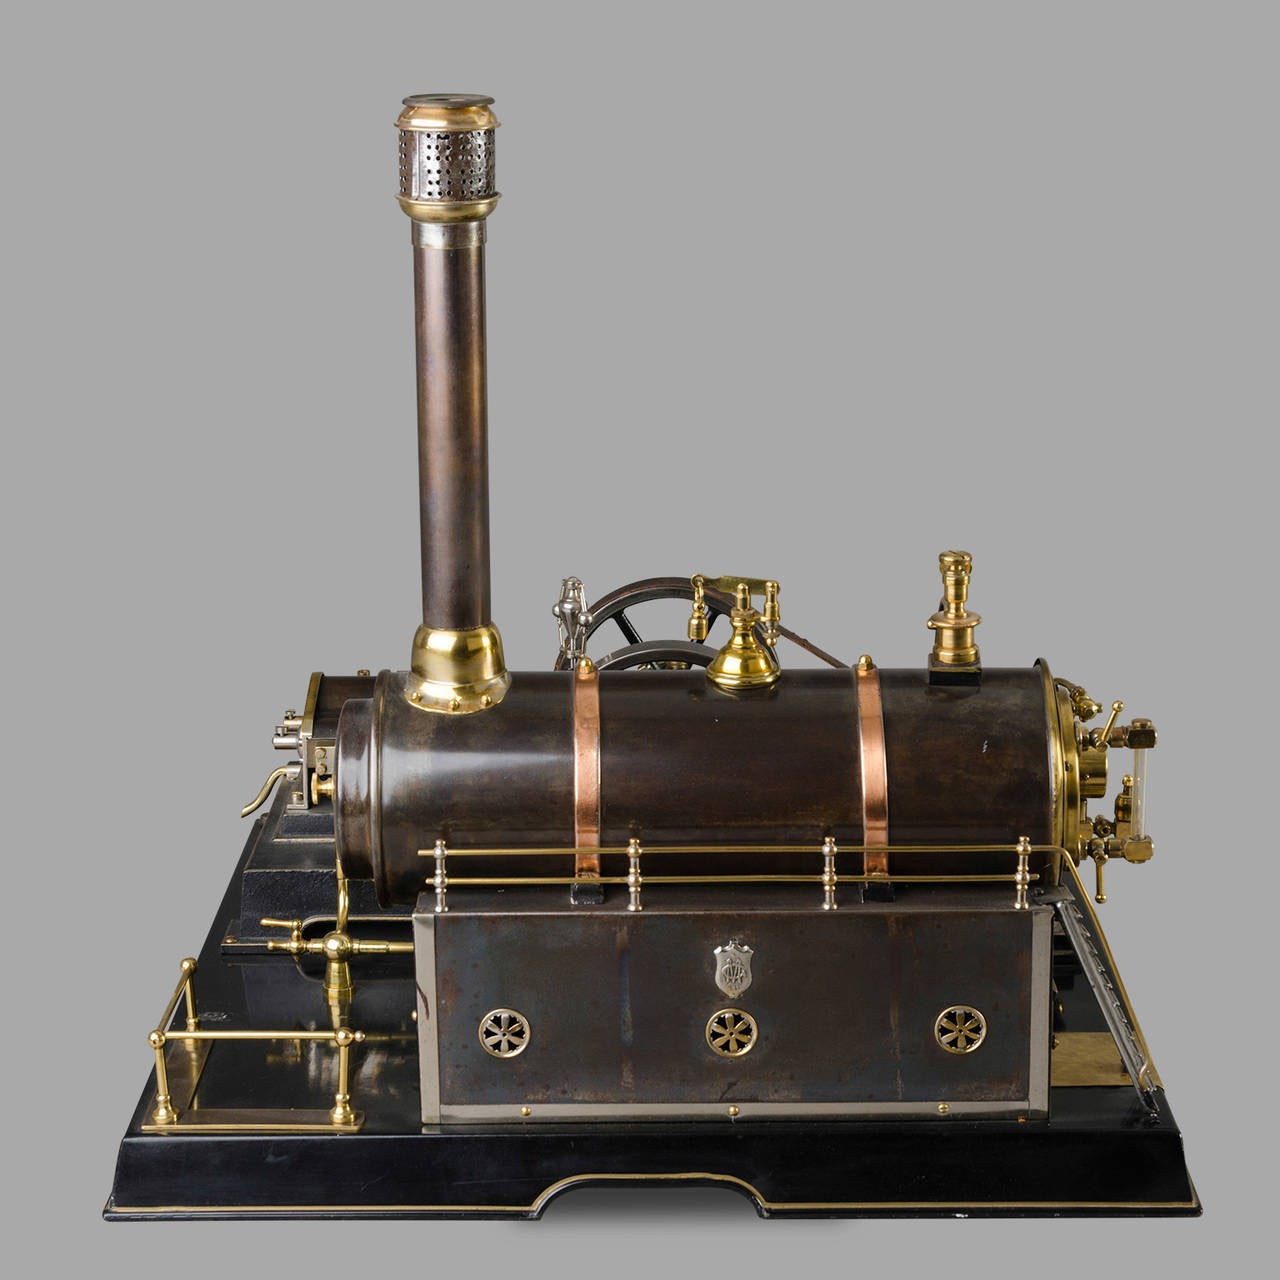 marklin steam engine for sale